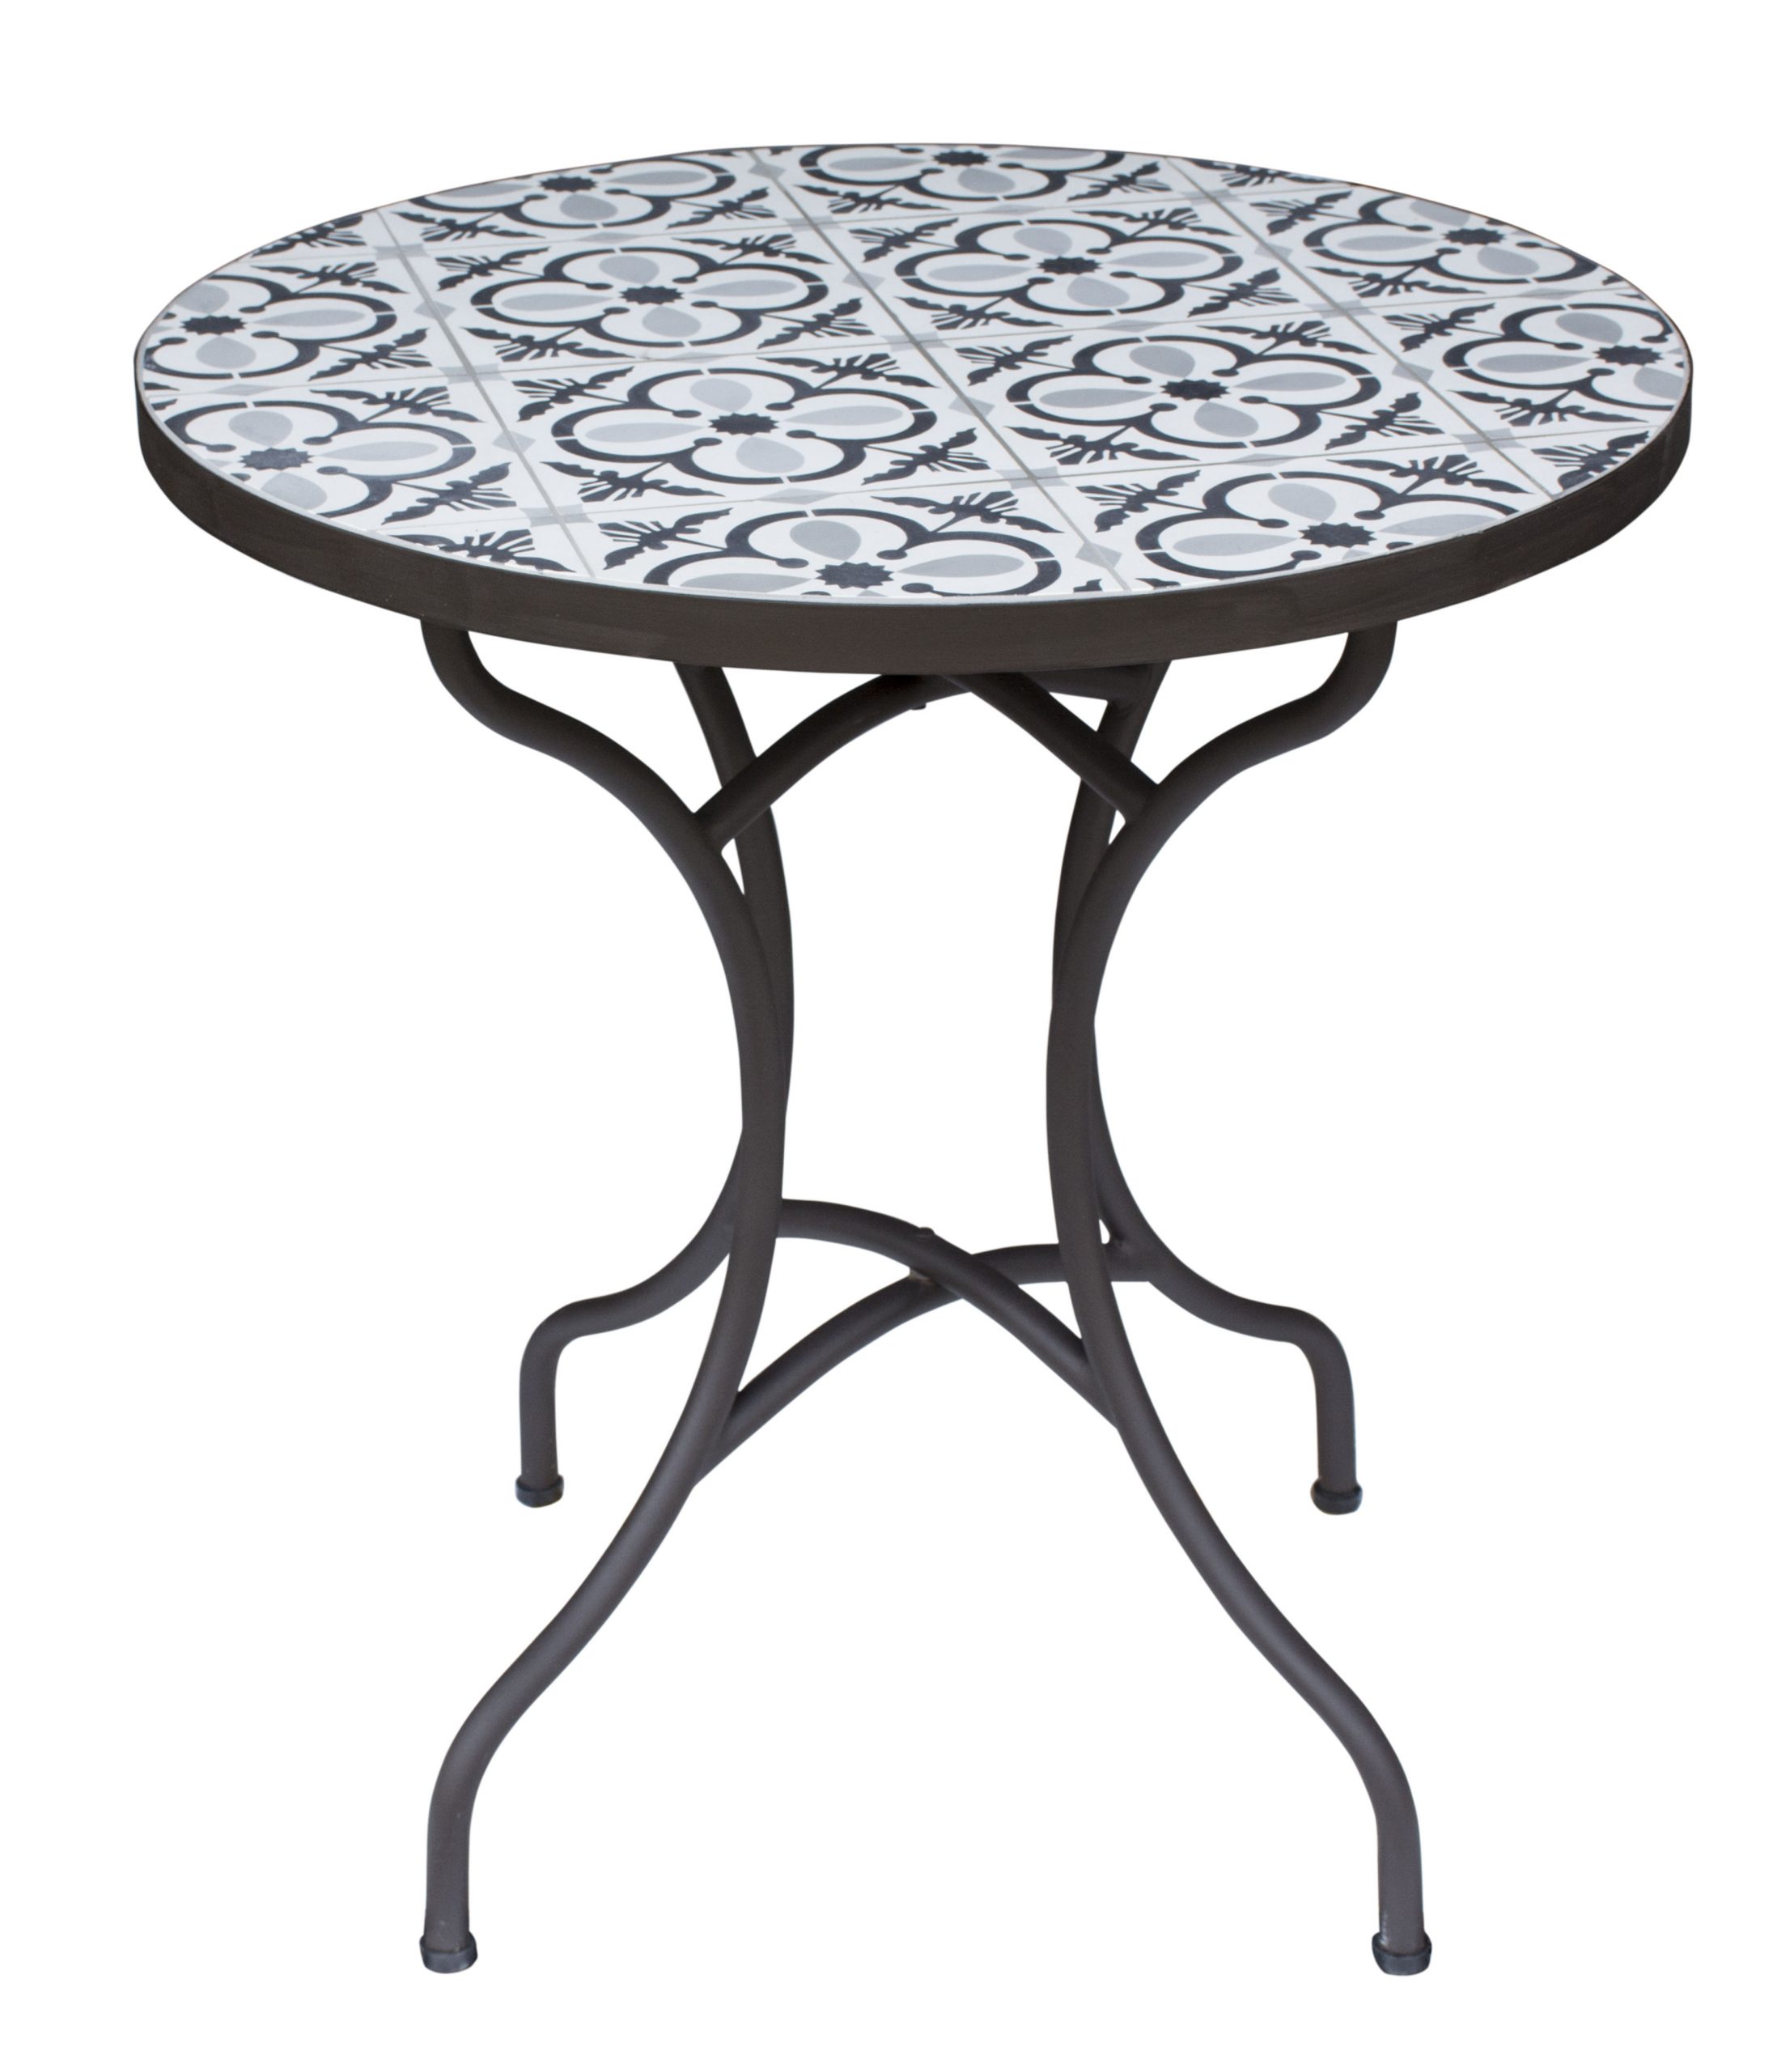 L'estivalier - Table Ronde Céramique Lisboa D70 Cm serapportantà Table De Jardin En Ceramique Ronde